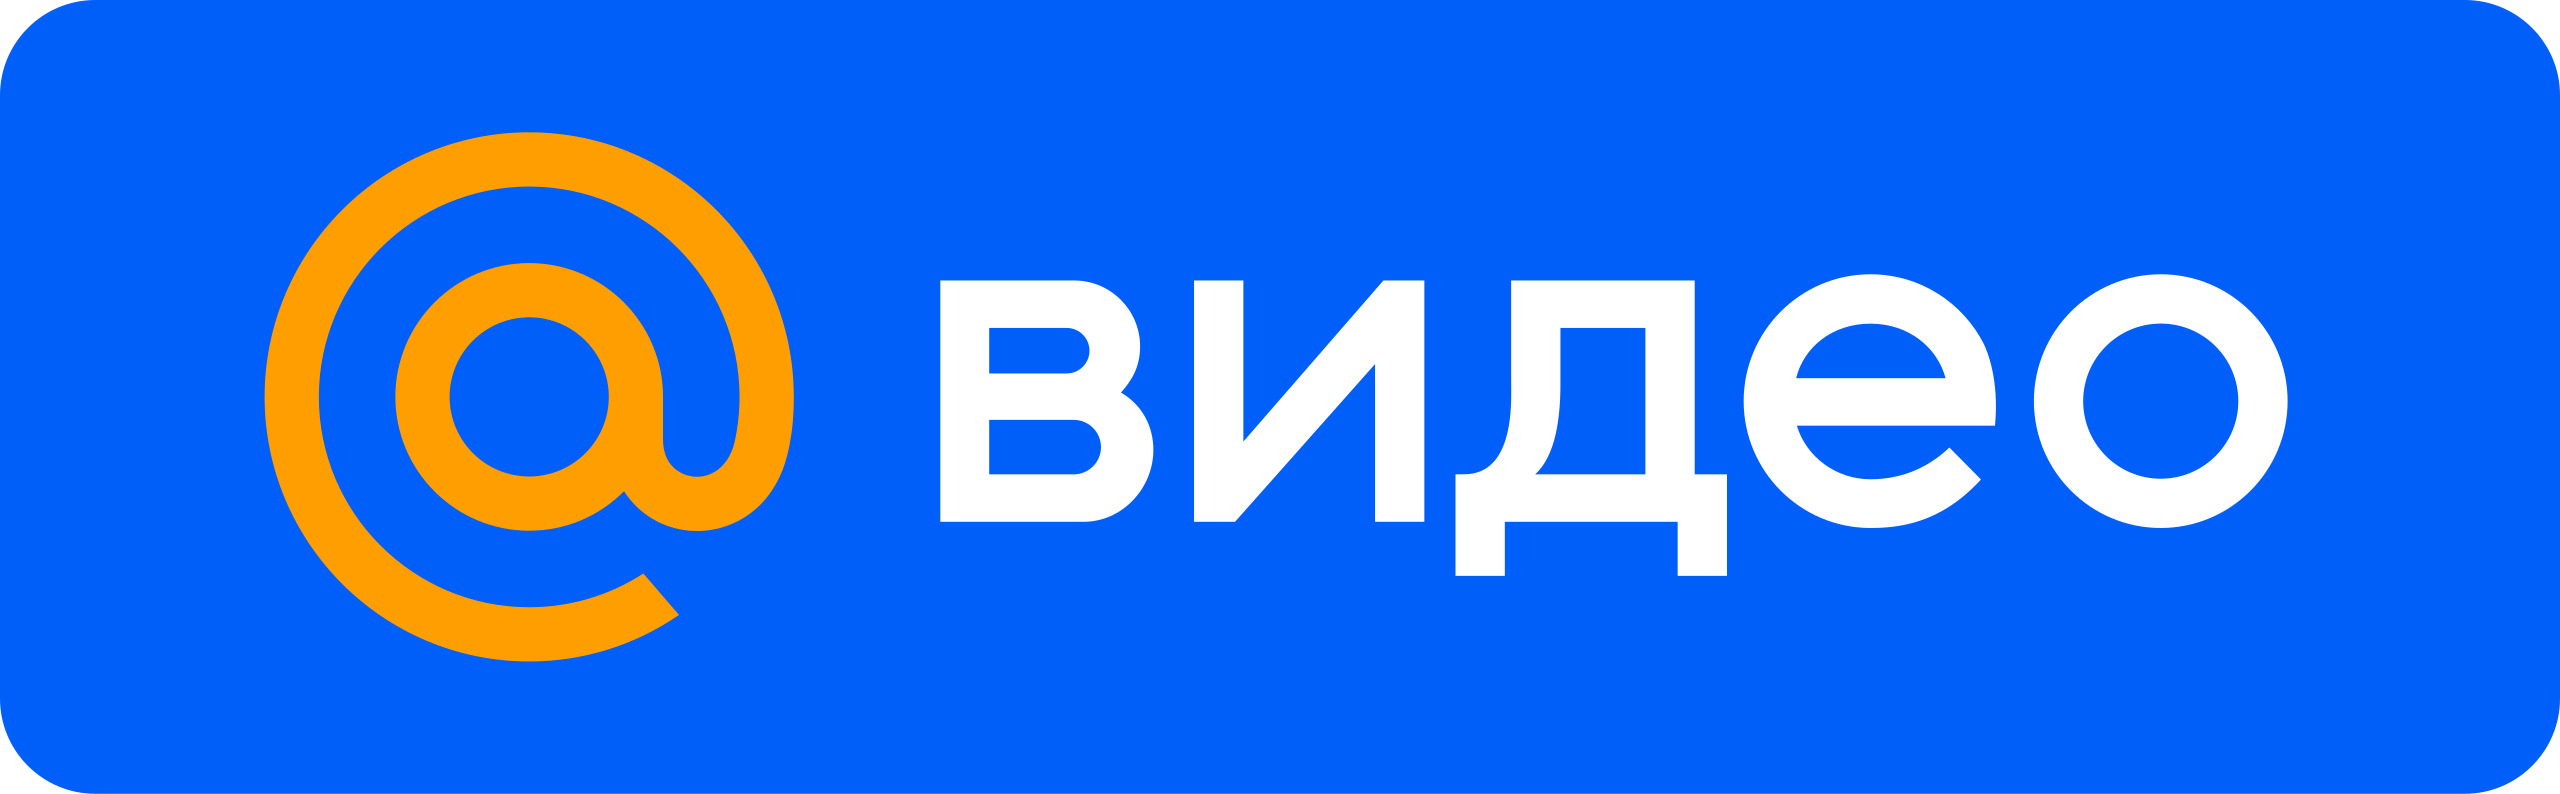 Sib mail ru. Майл ру. Видео mail.ru. Mail.ru логотип. Логотип почты мейл.